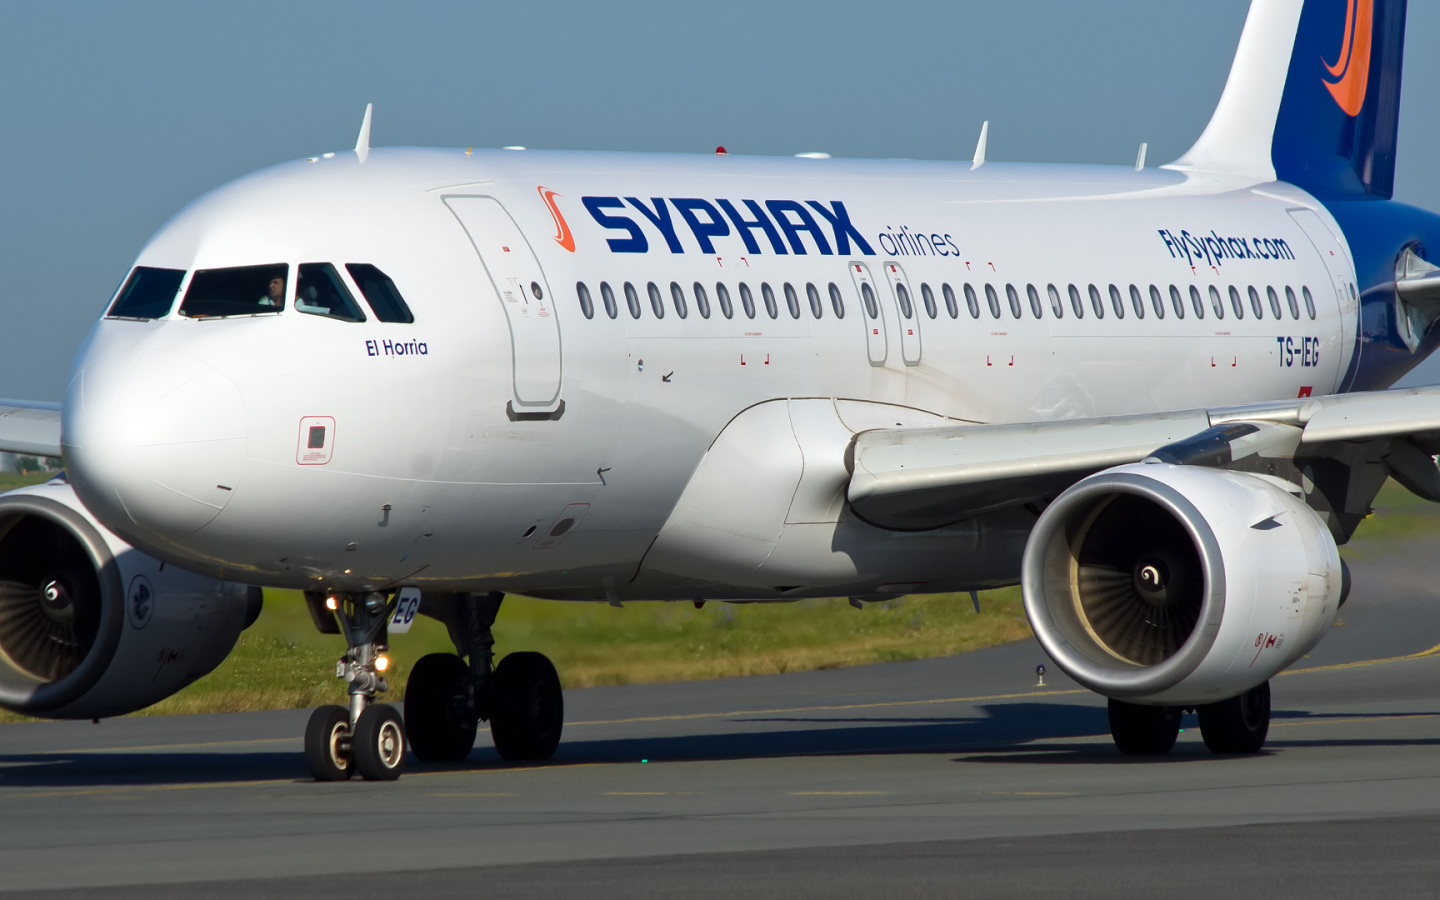 Самолет Airbus A319 авиакомпании Syphax Airlines на взлетной полосе 